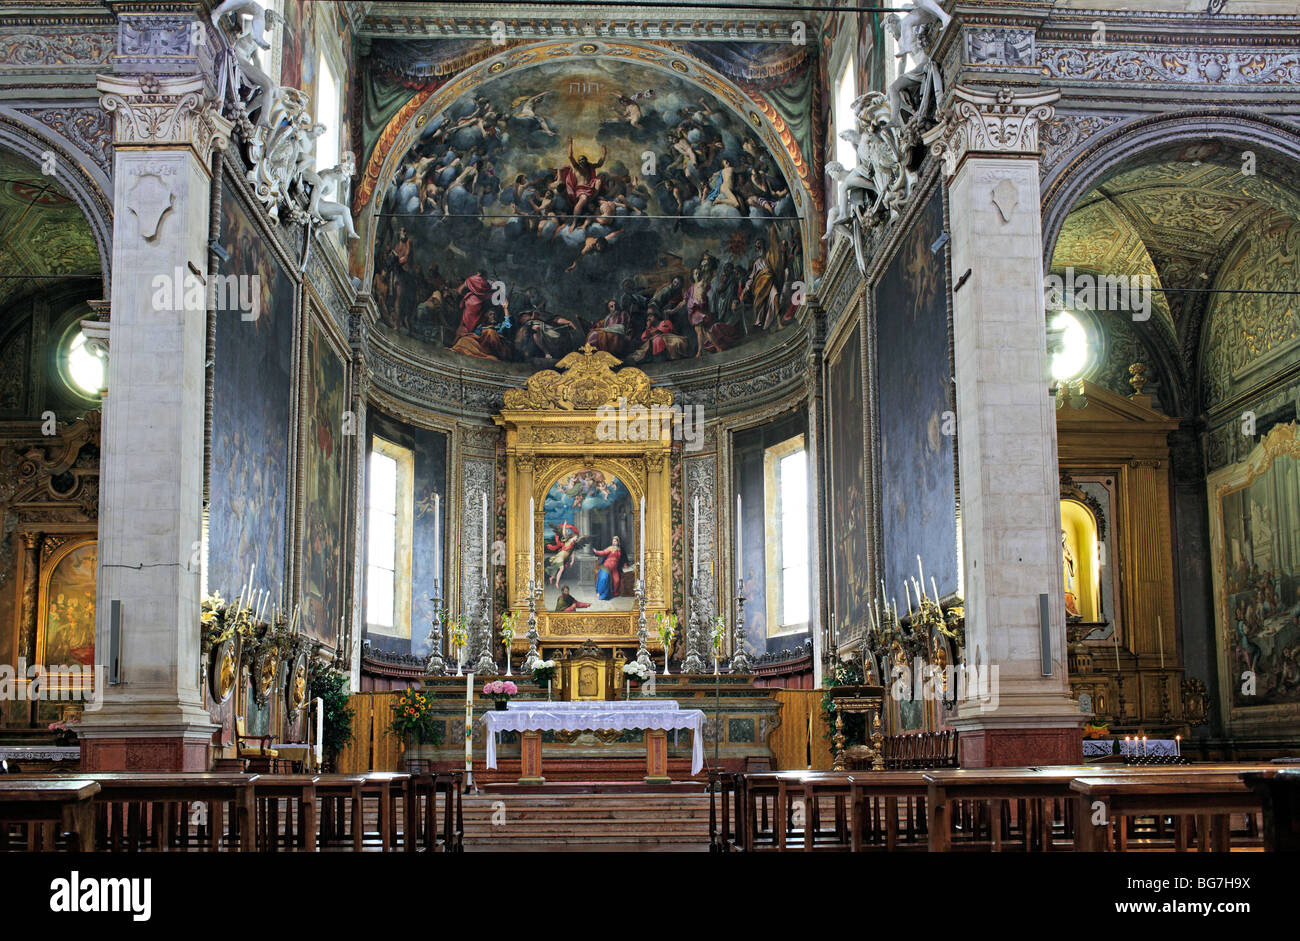 Église Santa Maria in Vado, Ferrara, UNESCO World Heritage Site, Emilia-Romagna, Italie Banque D'Images